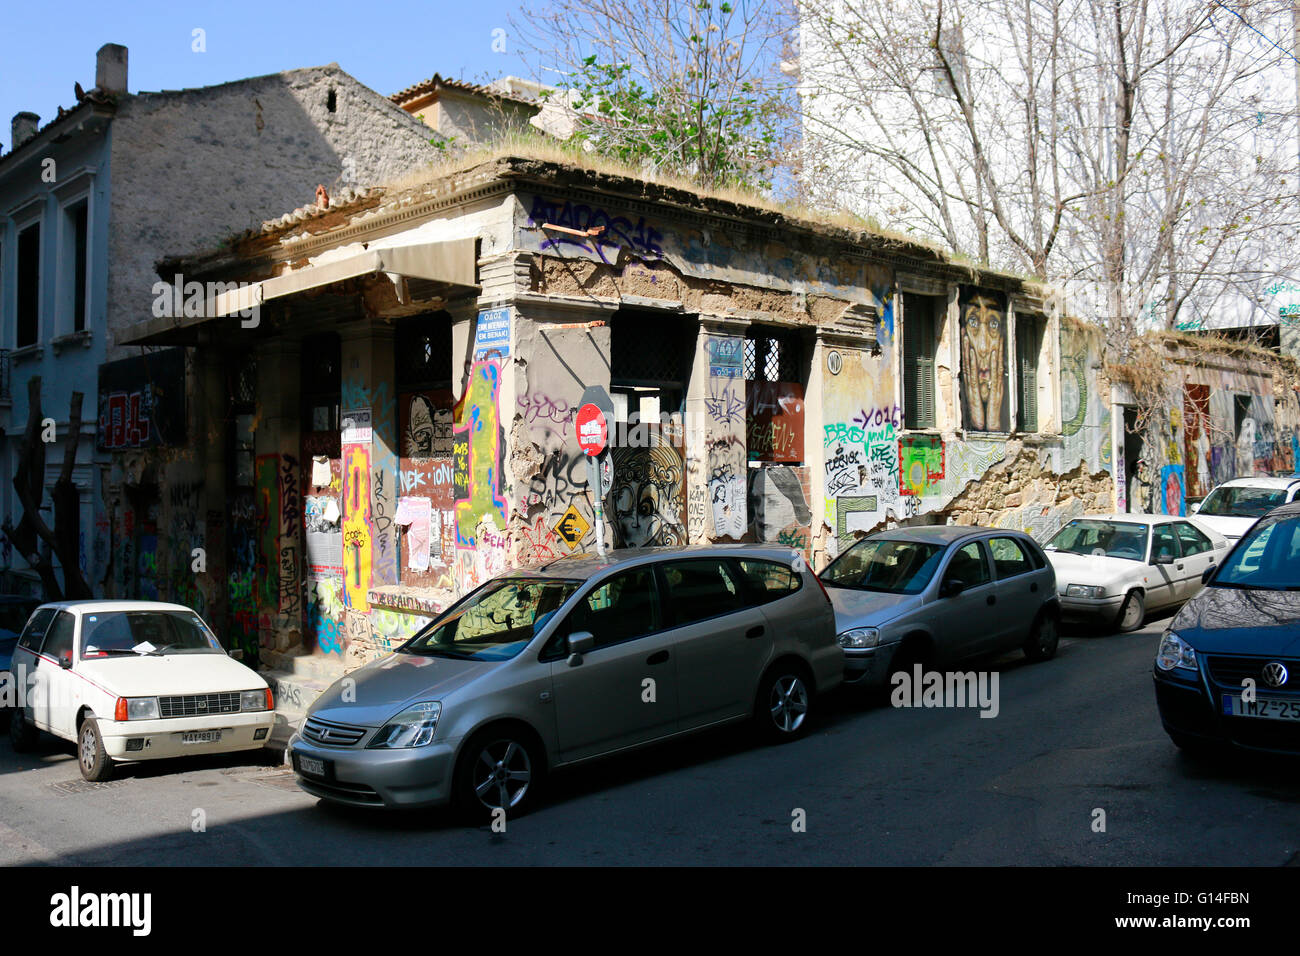 vandalisiertes und aufgegebenes Gebaeude im alternativen Stadtteil Exarchia - Impressionen, Wirtschaftskrise Griechenland, 5. Ap Stock Photo